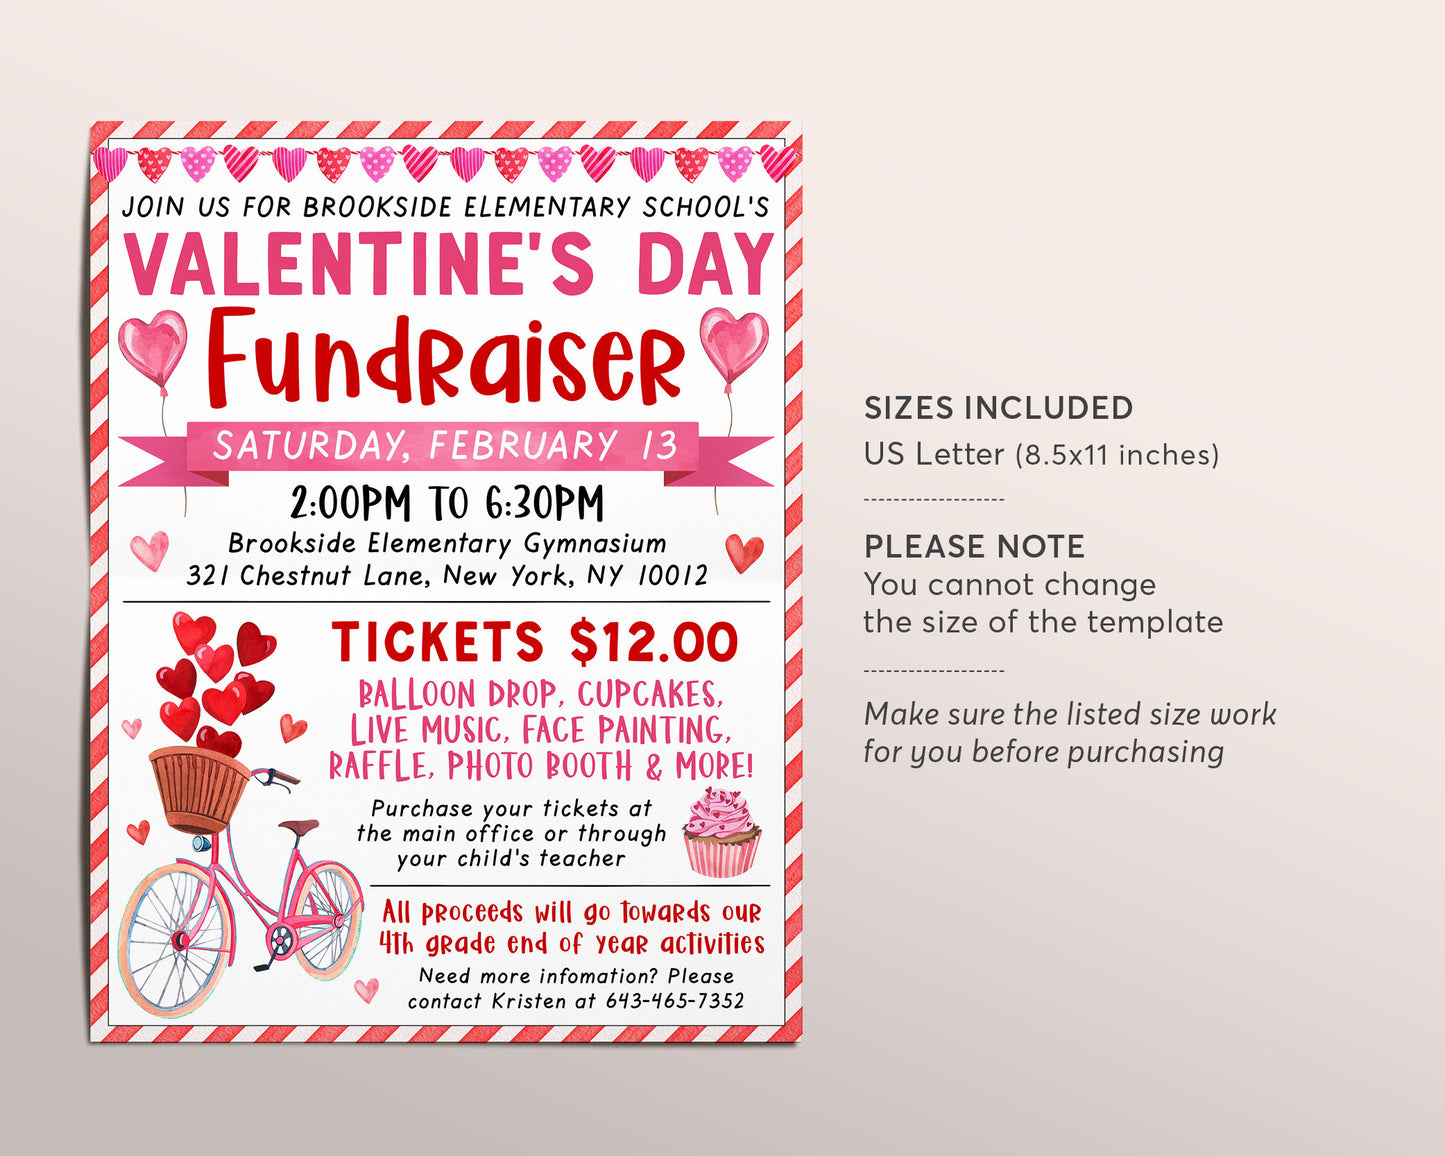 Valentine's Day Fundraiser Flyer Editable Template, Valentine Party Event Invitation Invite PTA PTO School Nonprofit Church Festival Charity